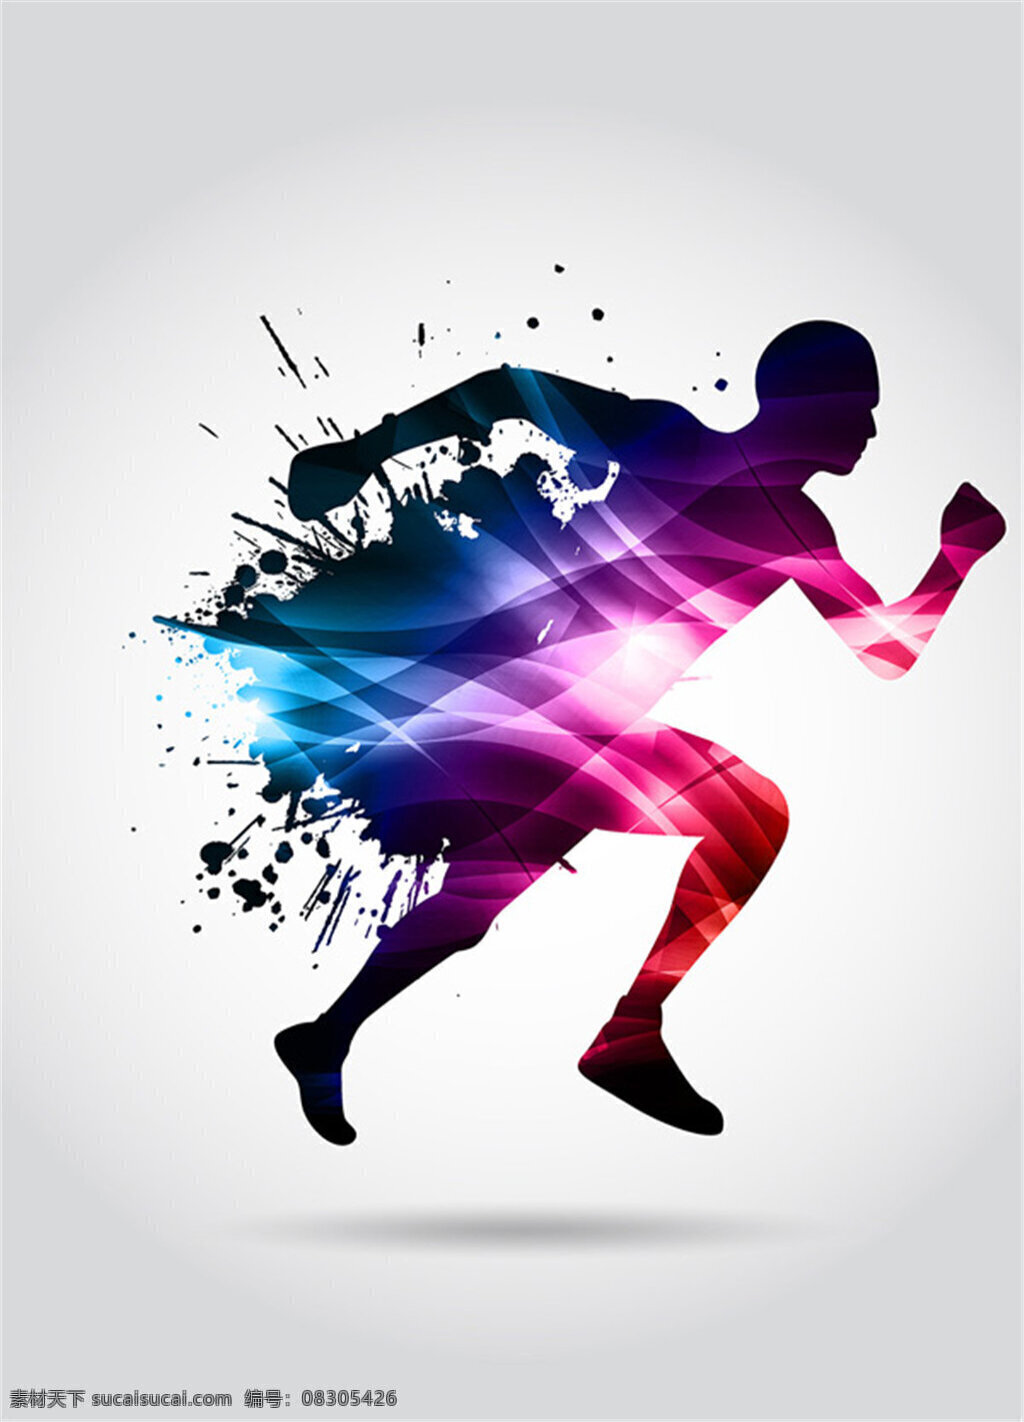 炫彩 运动 人物 奔跑的人物 墨迹 七彩光晕 矢量素材 冠军 运动员 健身健康 矢量元素